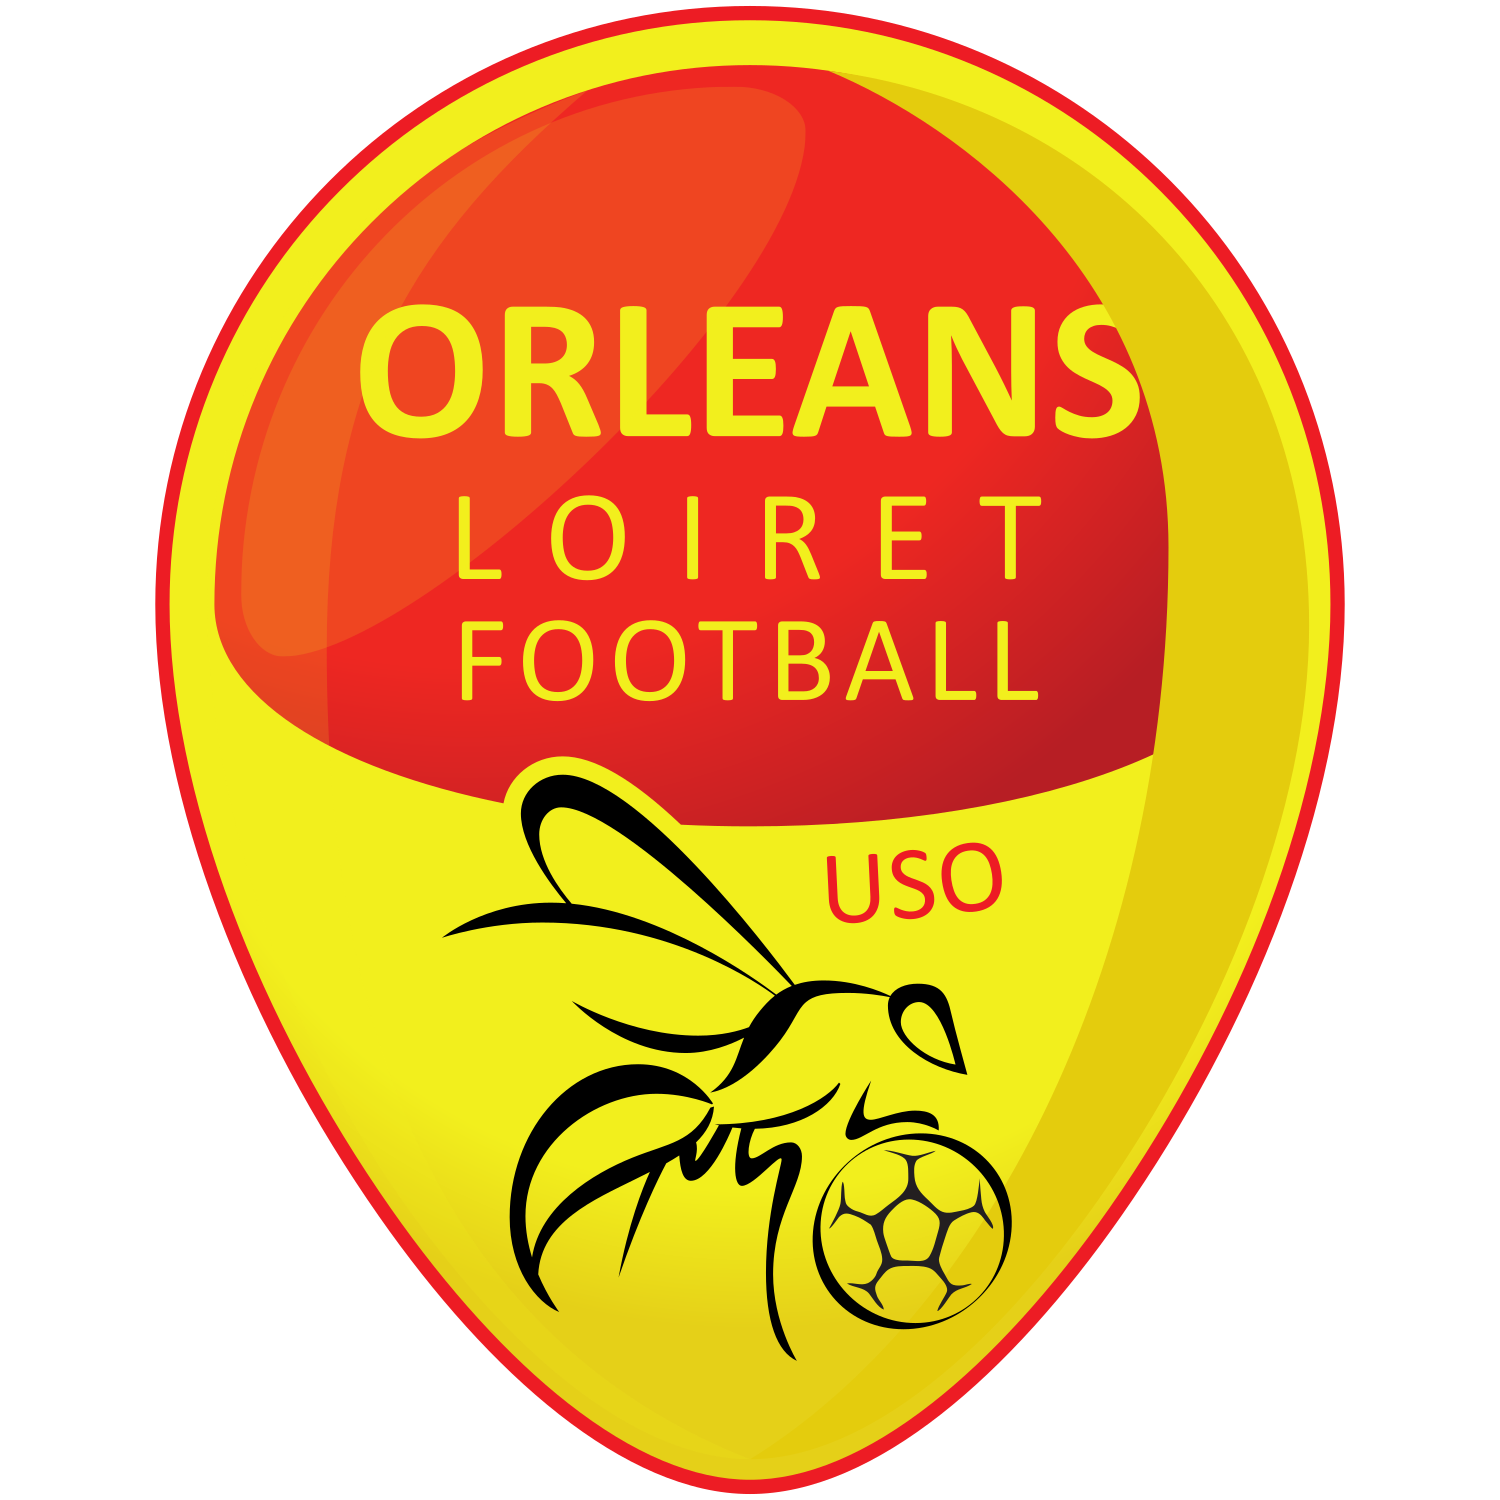 Wappen US Orléans Loiret Football diverse  124493